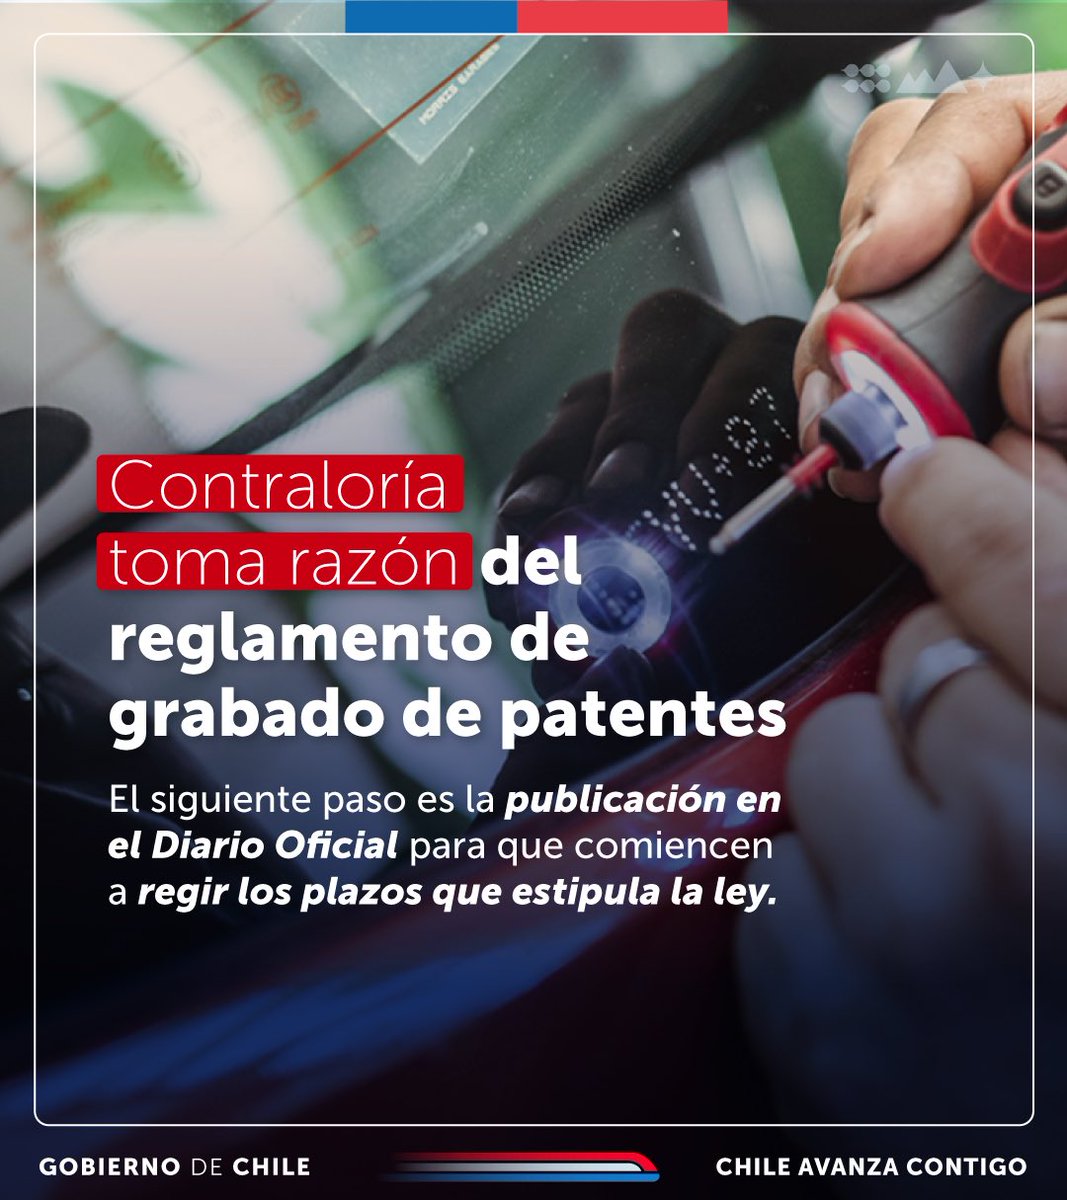 Pronto daremos a conocer los detalles de cómo deberá realizarse el grabado de patentes. 👆🏻Recuerda: un vez que se publica en el Diario Oficial, tendrás un plazo de 12 meses para grabar la patente en los vidrios y espejos de tu vehículo.